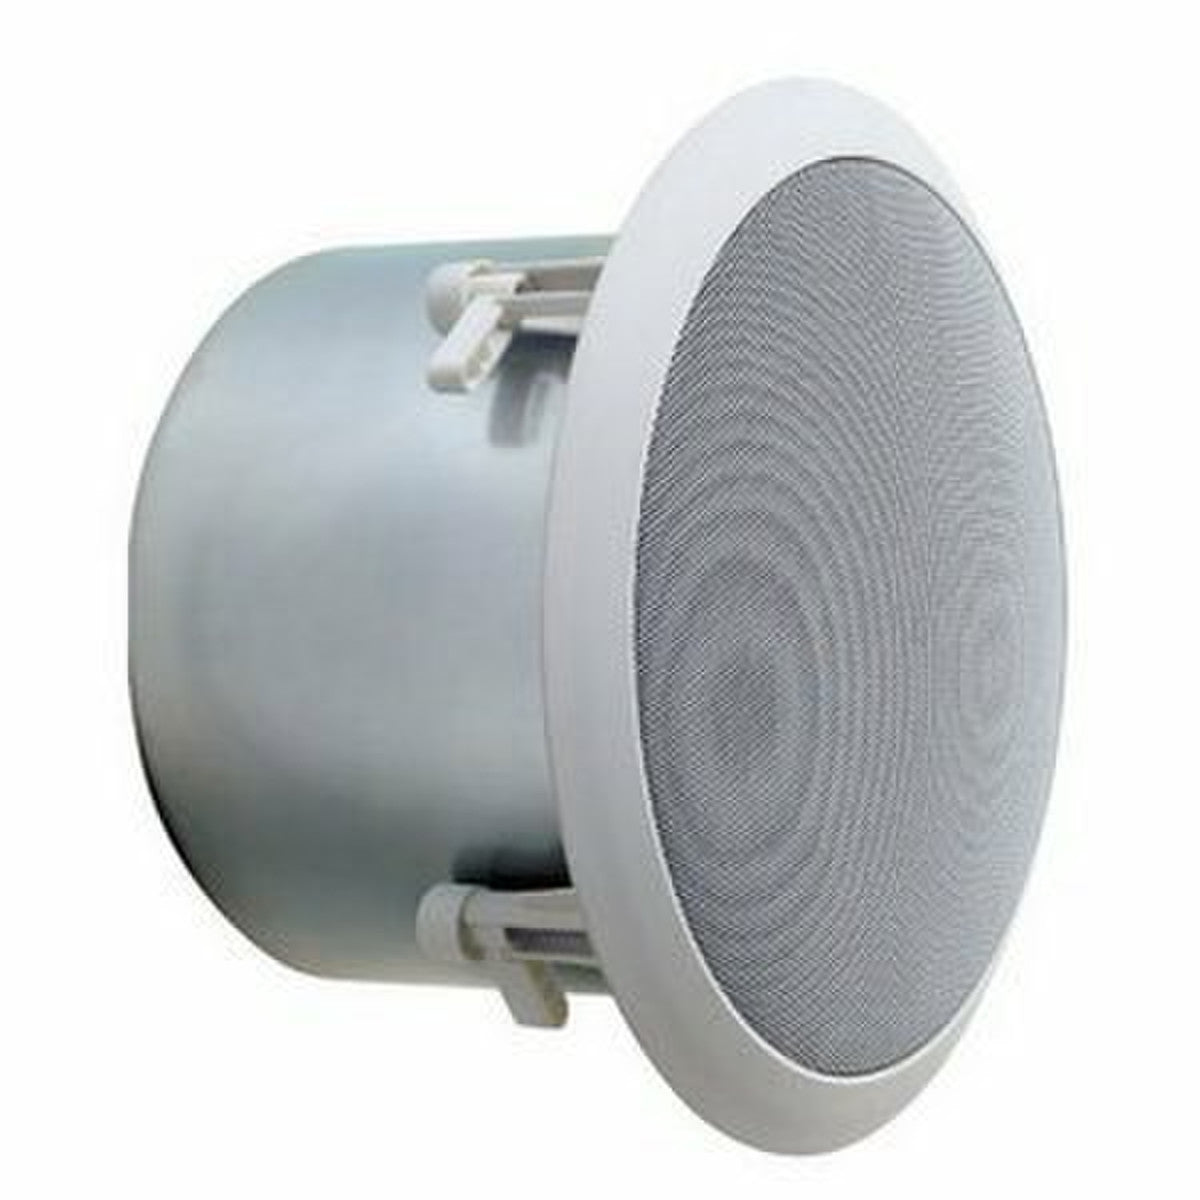 Bogen HFCS1LP High Fidelity, Low Profile Ceiling Speaker | New